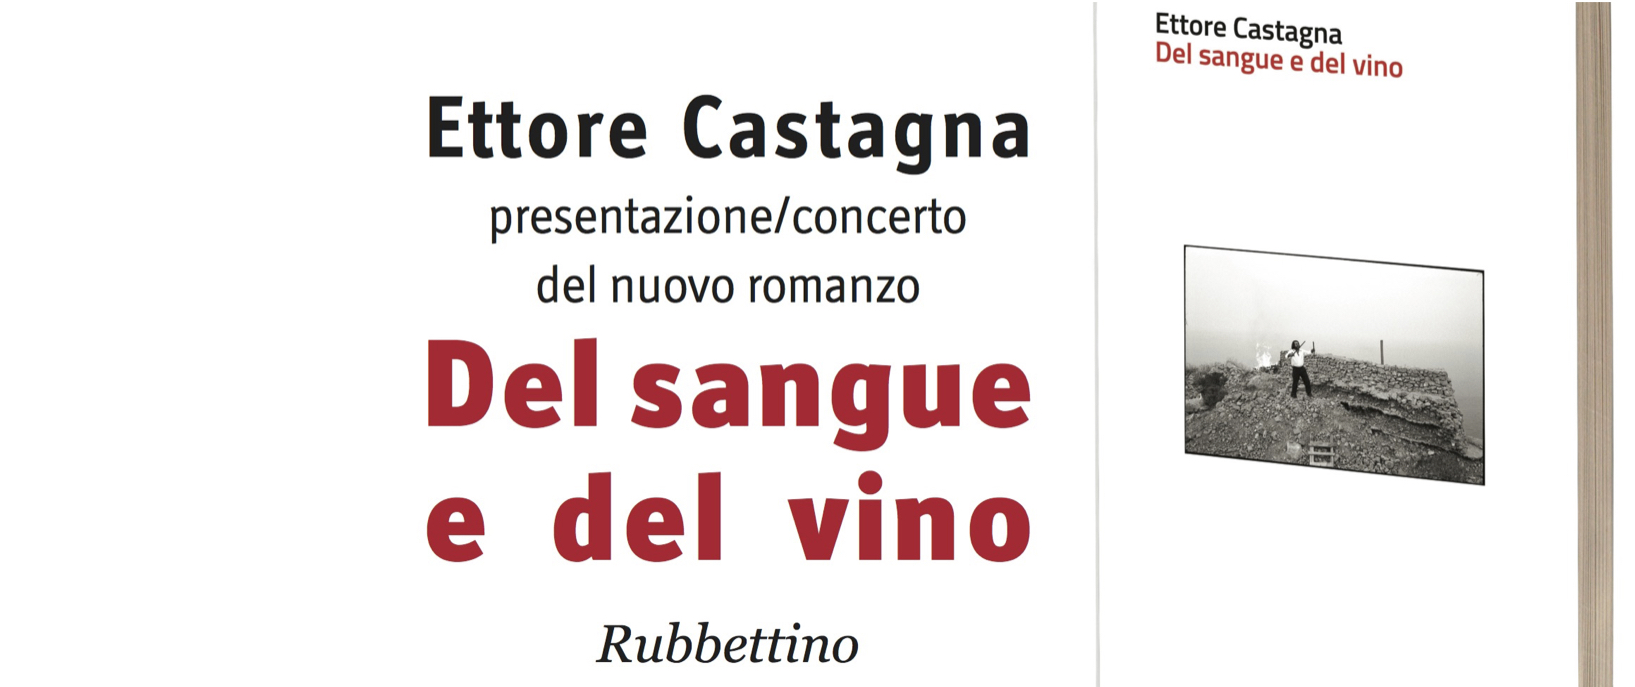 Αποτέλεσμα εικόνας για Ettore Castagna Del sangue e del vino